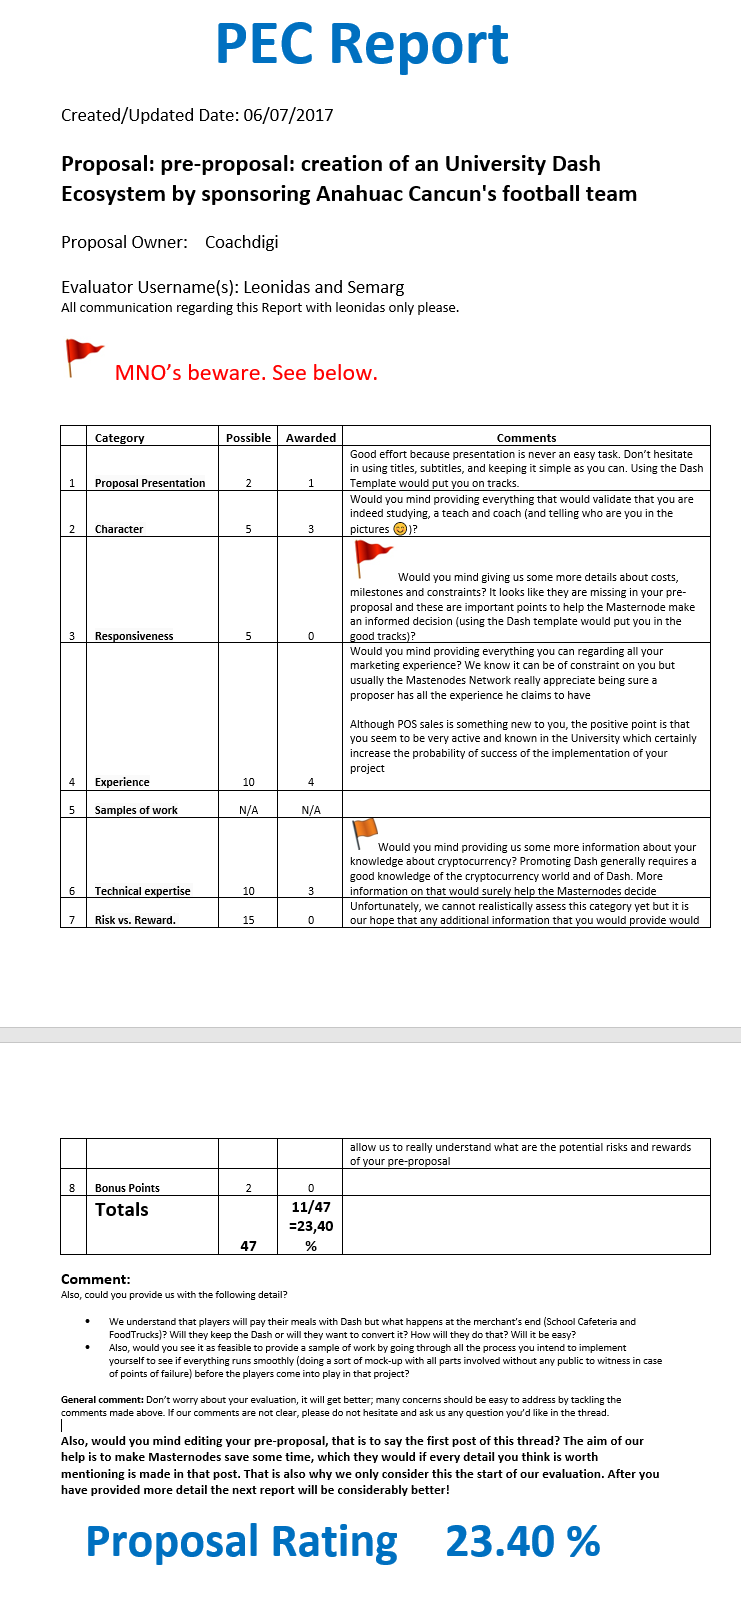 PEC Report leonidas For Coachdigi - Evaluation 1 v03 checked.png